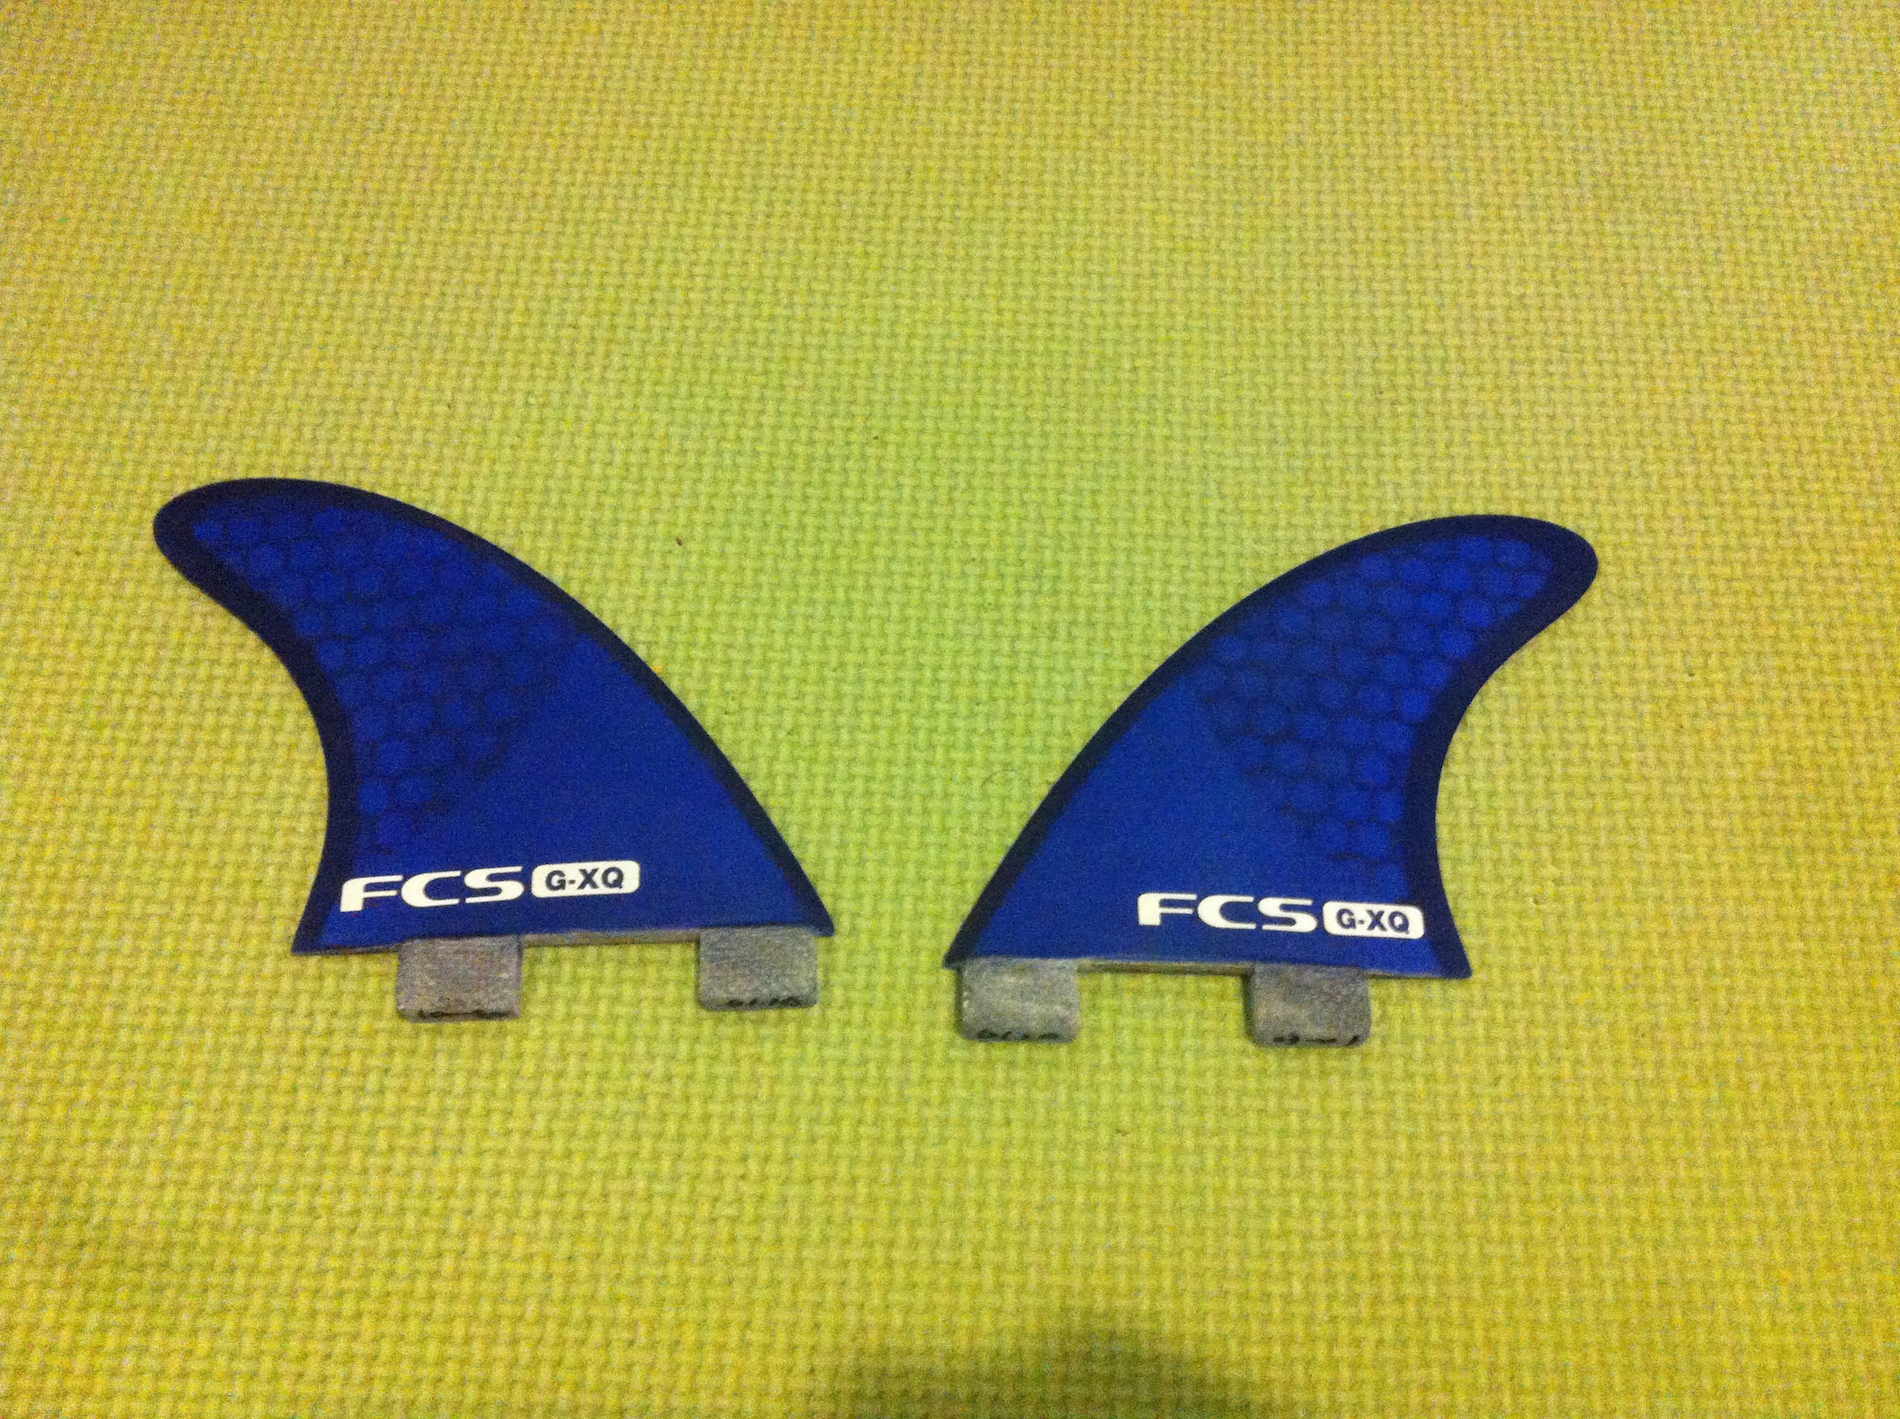 GX-Q Quad rear FCS Fins